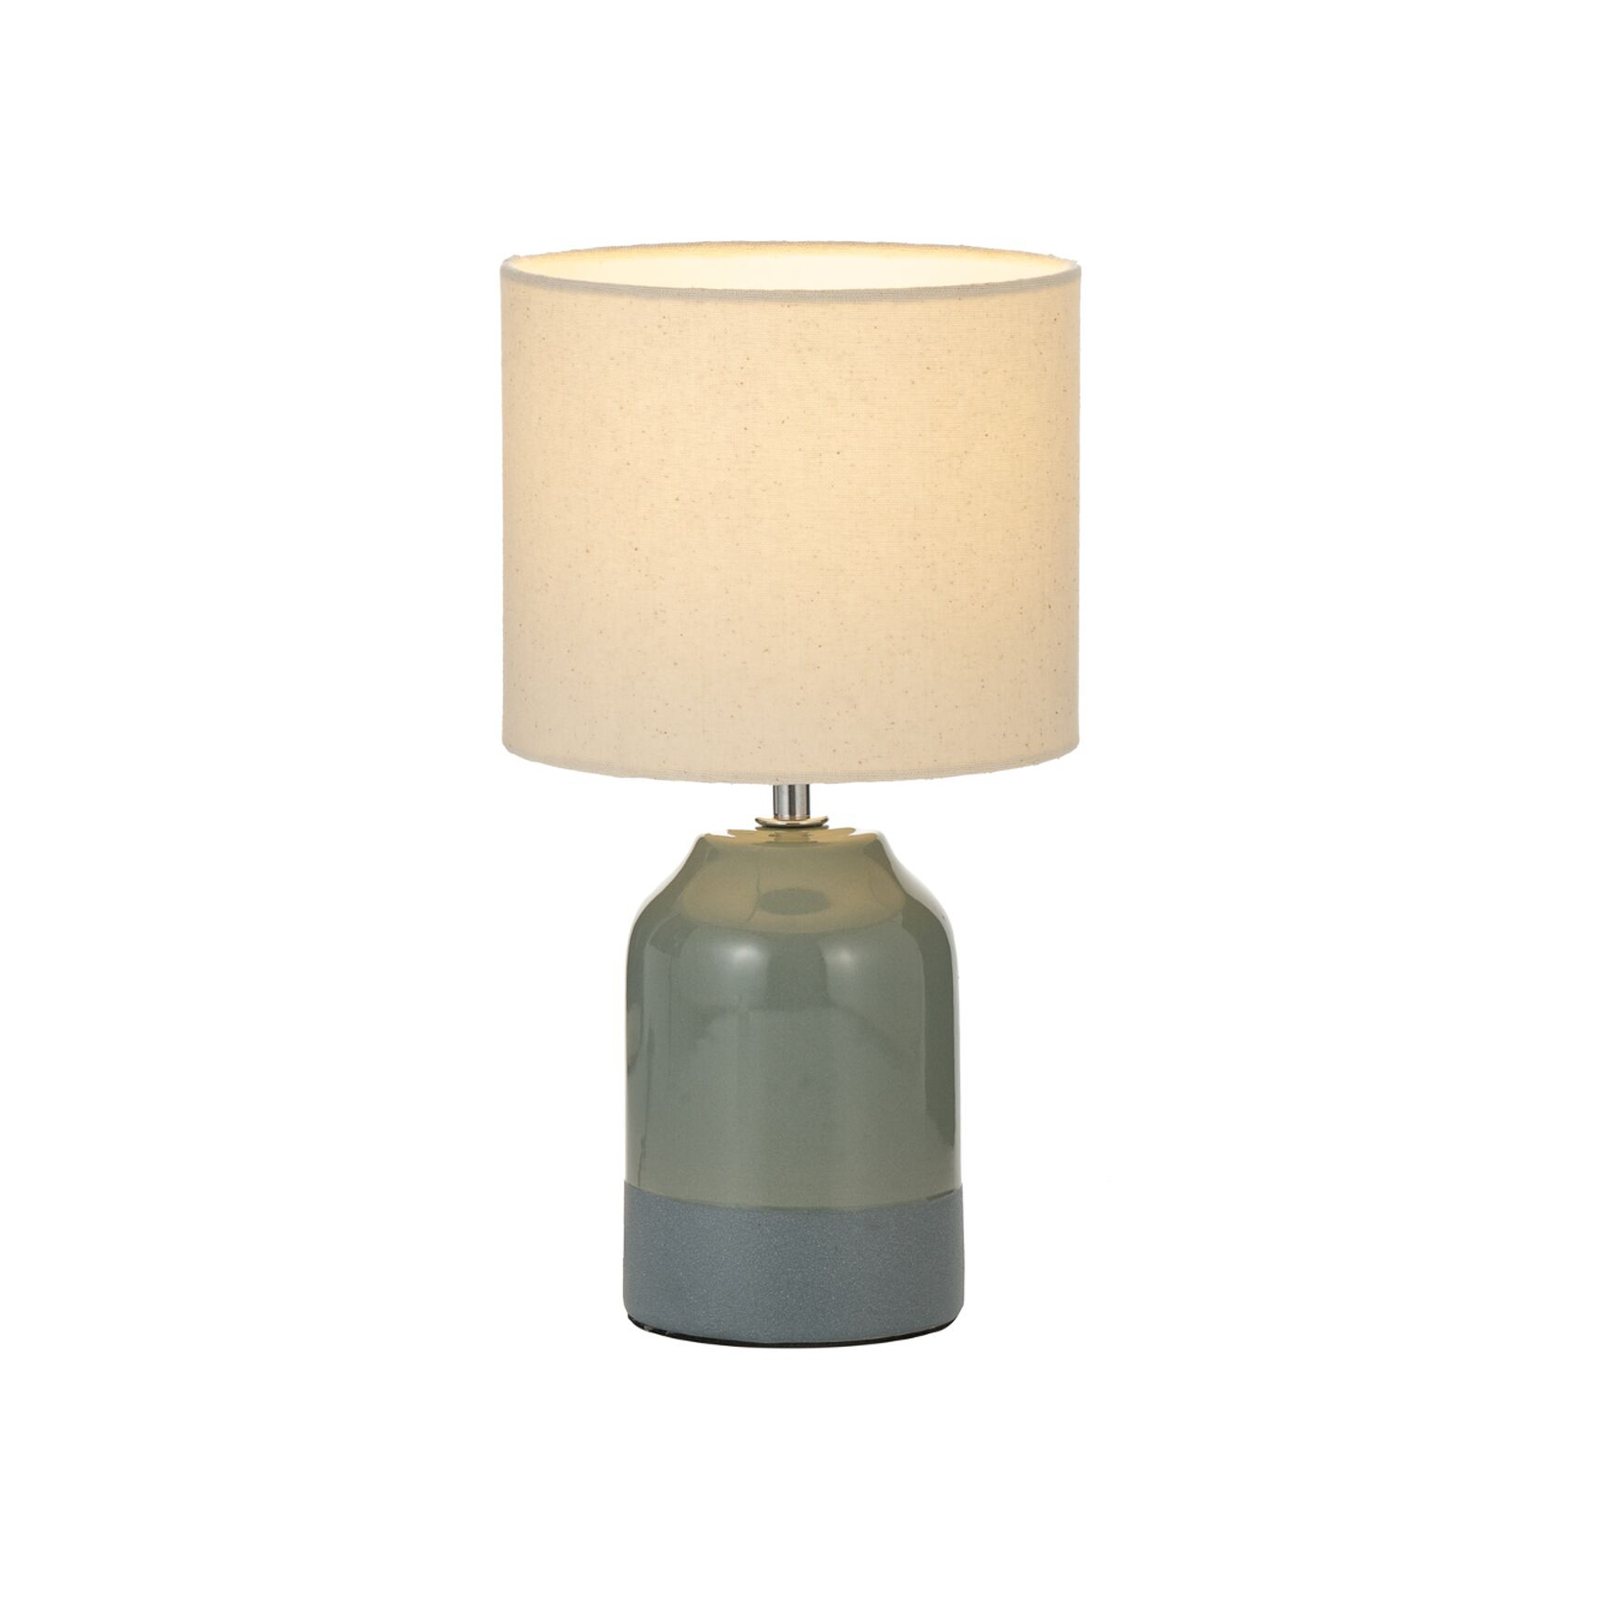 Pauleen Sandy Glow stolová lampa, krémová/zelená